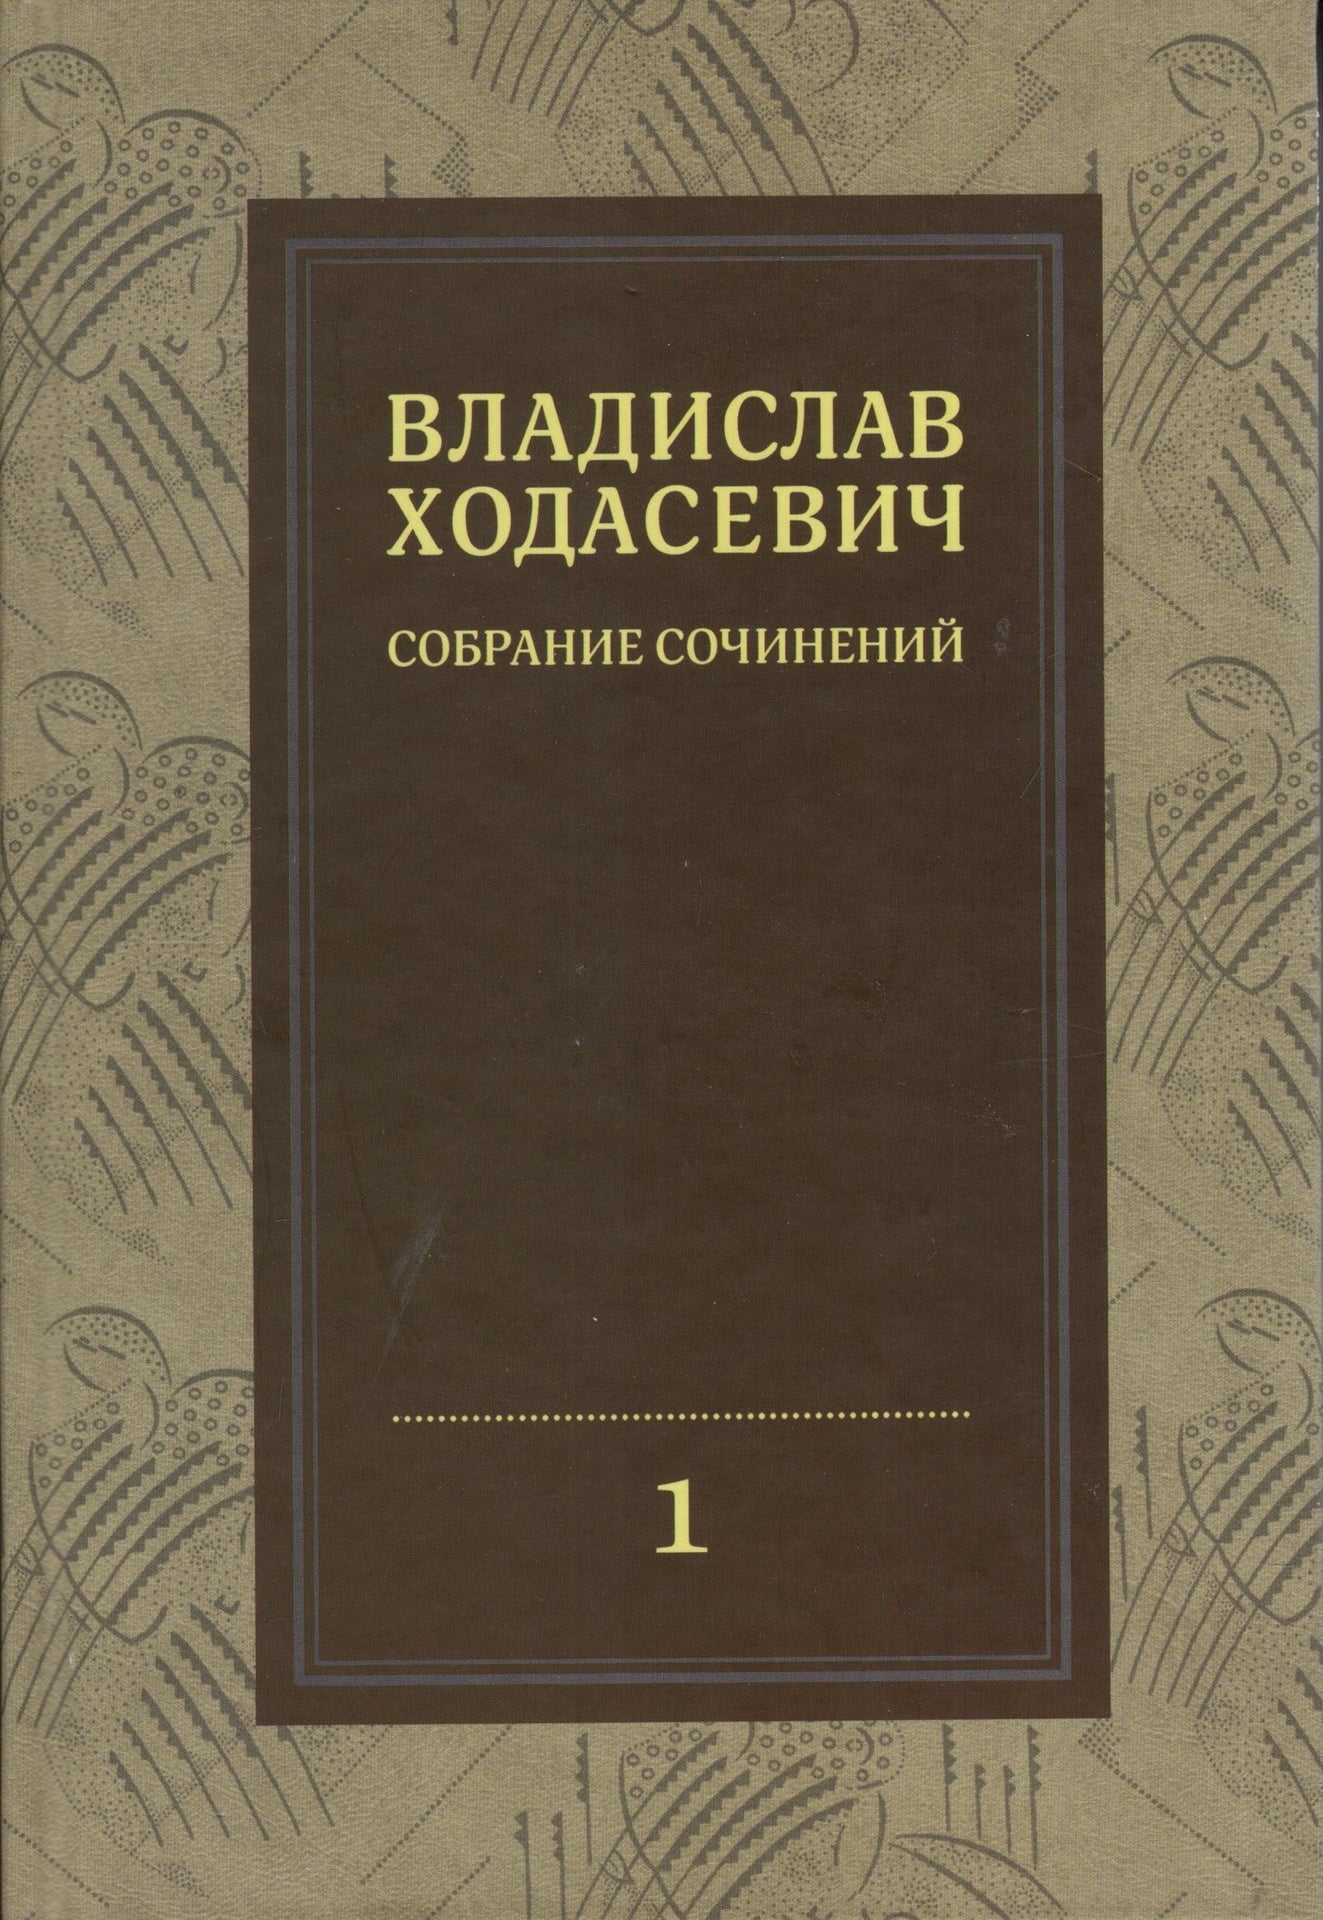 Владислав Ходасевич - Собрание сочинений (Том 1)